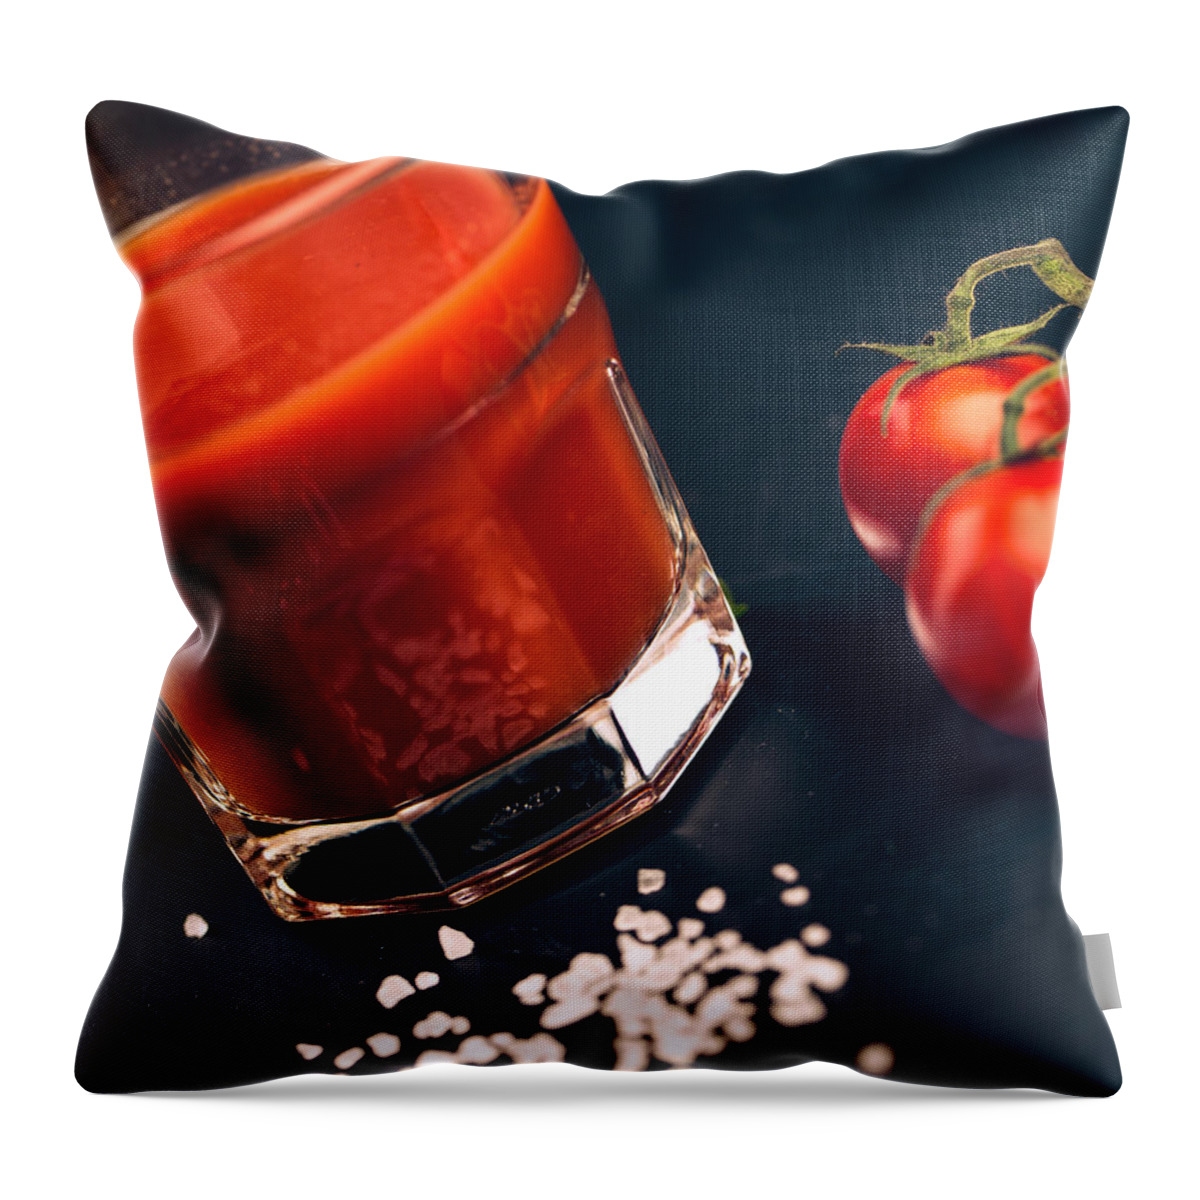 Tomato Throw Pillow featuring the photograph Tomato Juice #1 by Nailia Schwarz